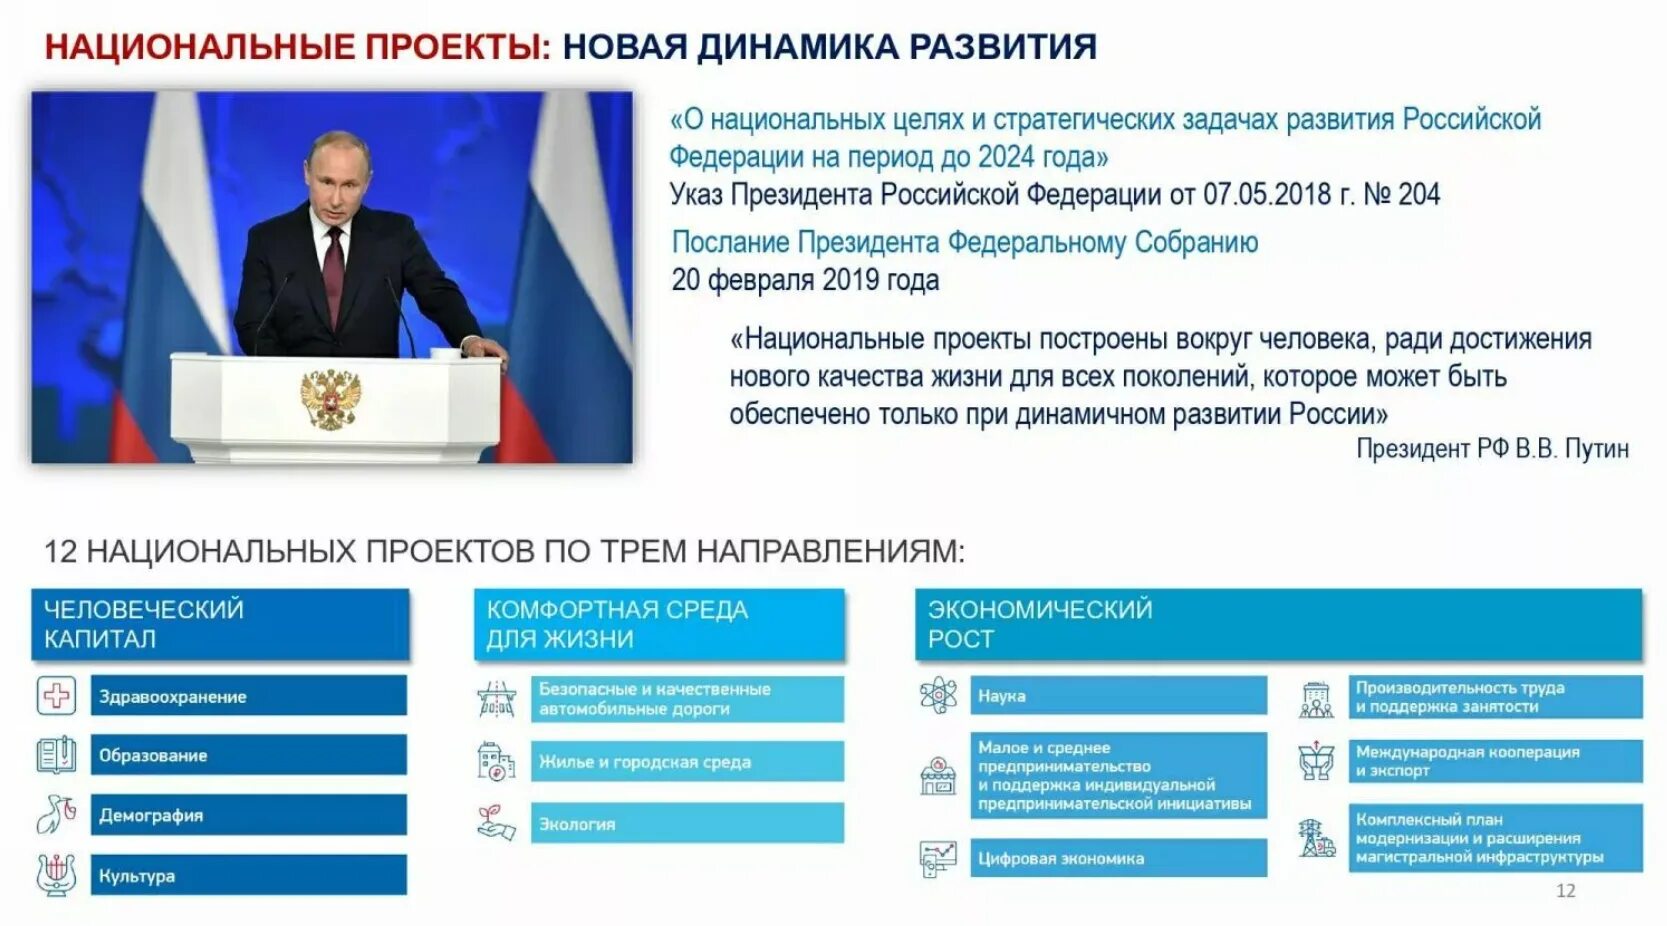 5 национальных проектов российской федерации